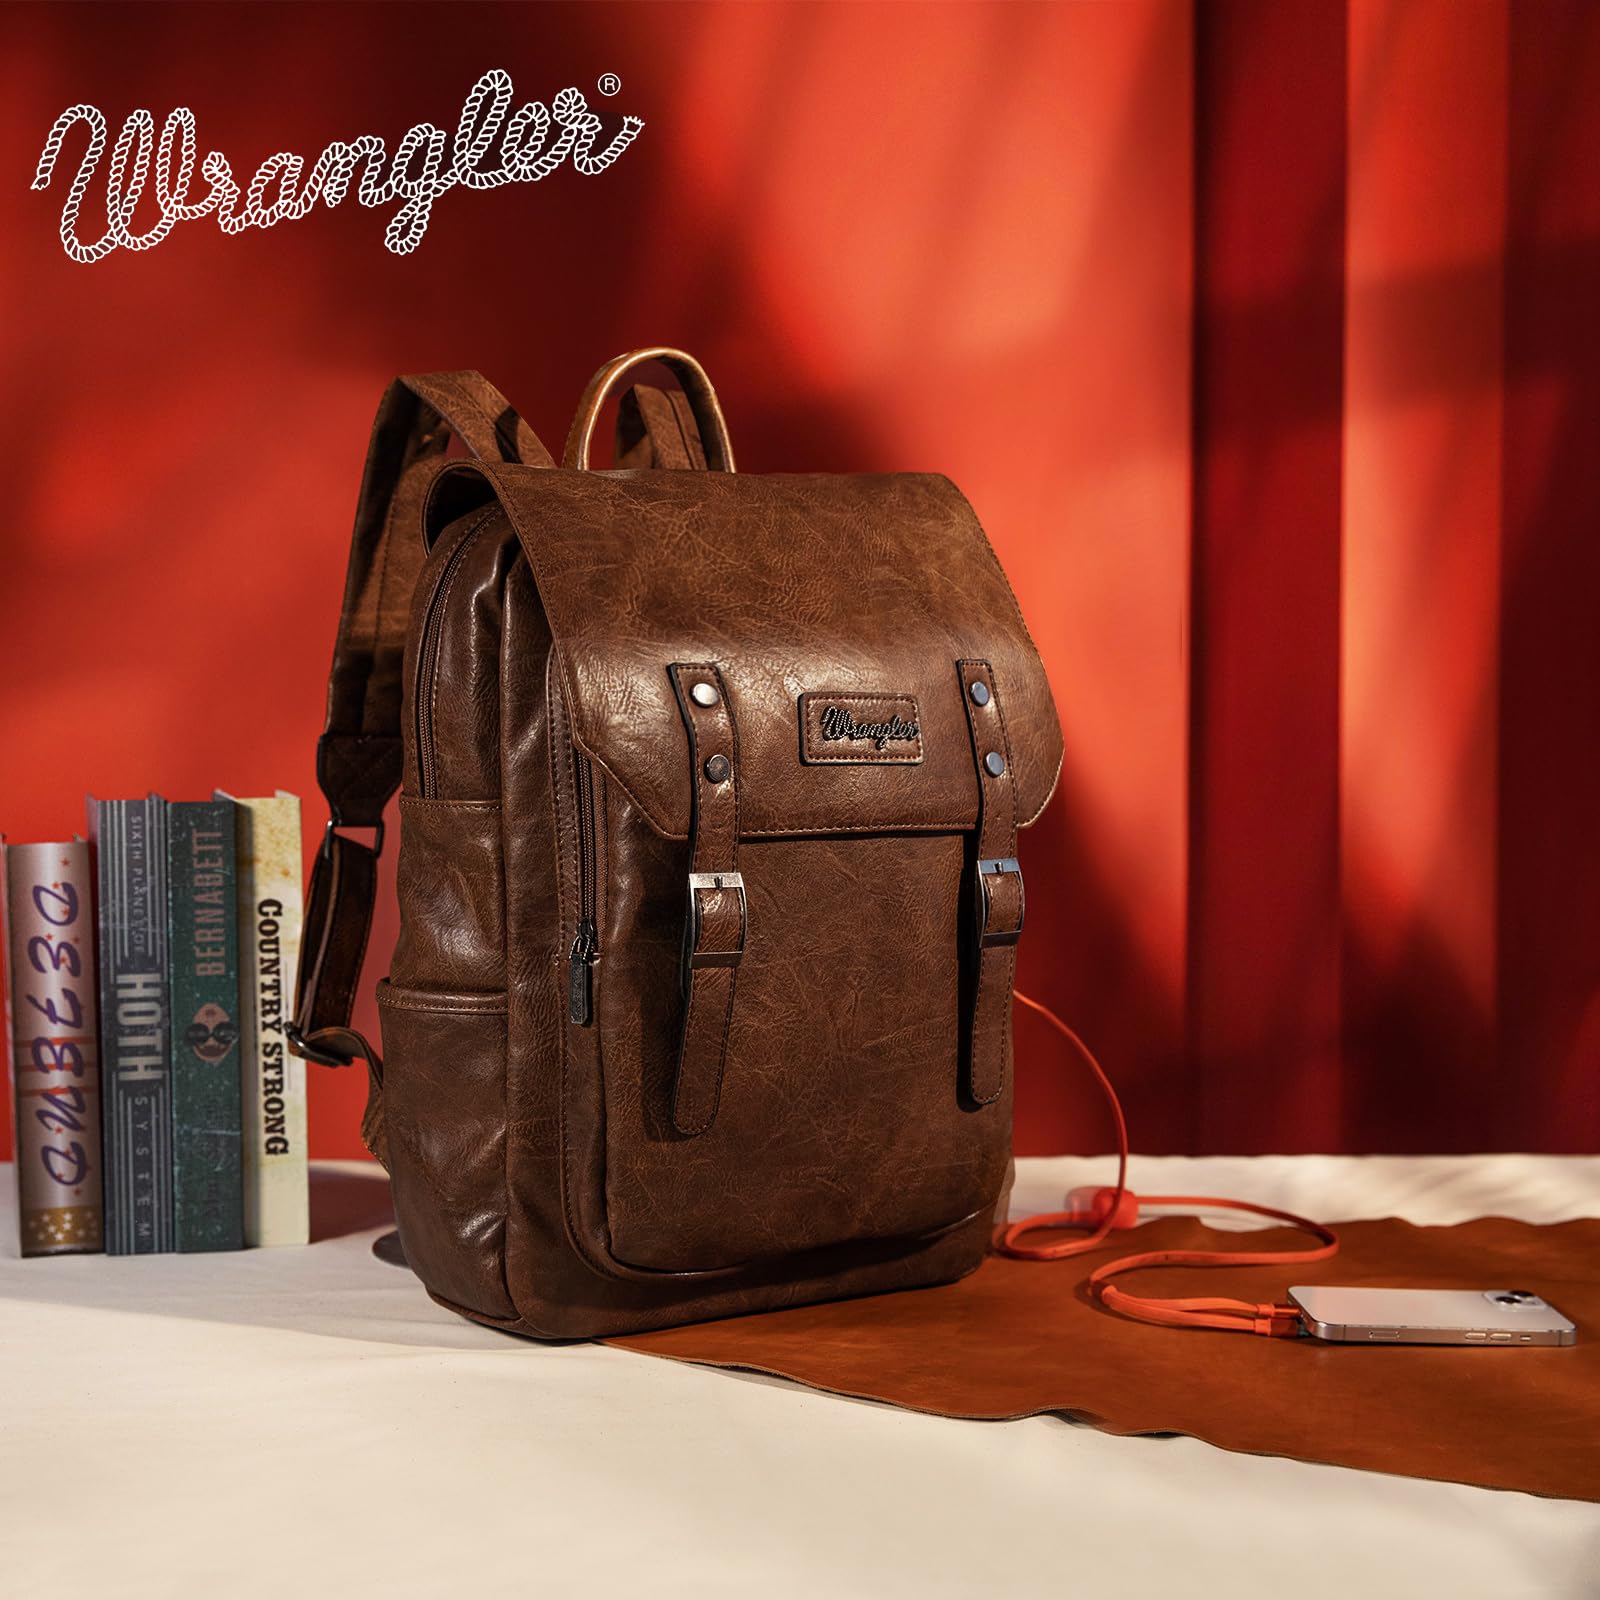 Wrangler Leather Backpack for Men & Women Travel Laptop Backpack College Vintage Dark Brown Backpack with USB Charging Port WG98-043DBR